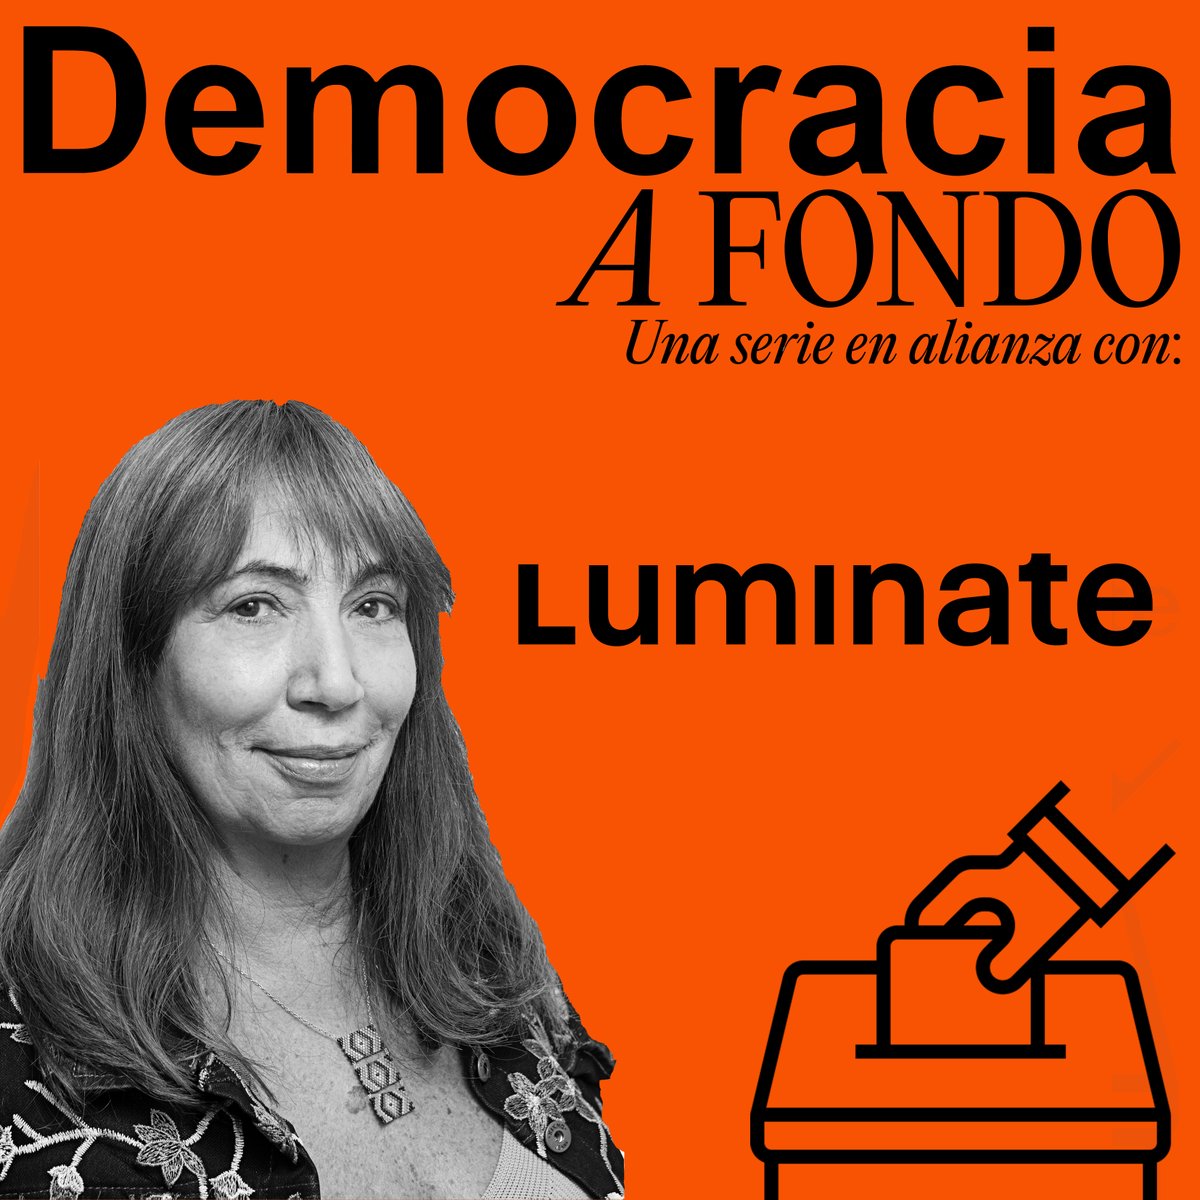 ¡Mañana lanzamos Democracia A Fondo, una colaboración con la periodista @MJDuzan para una serie especial de podcasts sobre la democracia en Colombia!